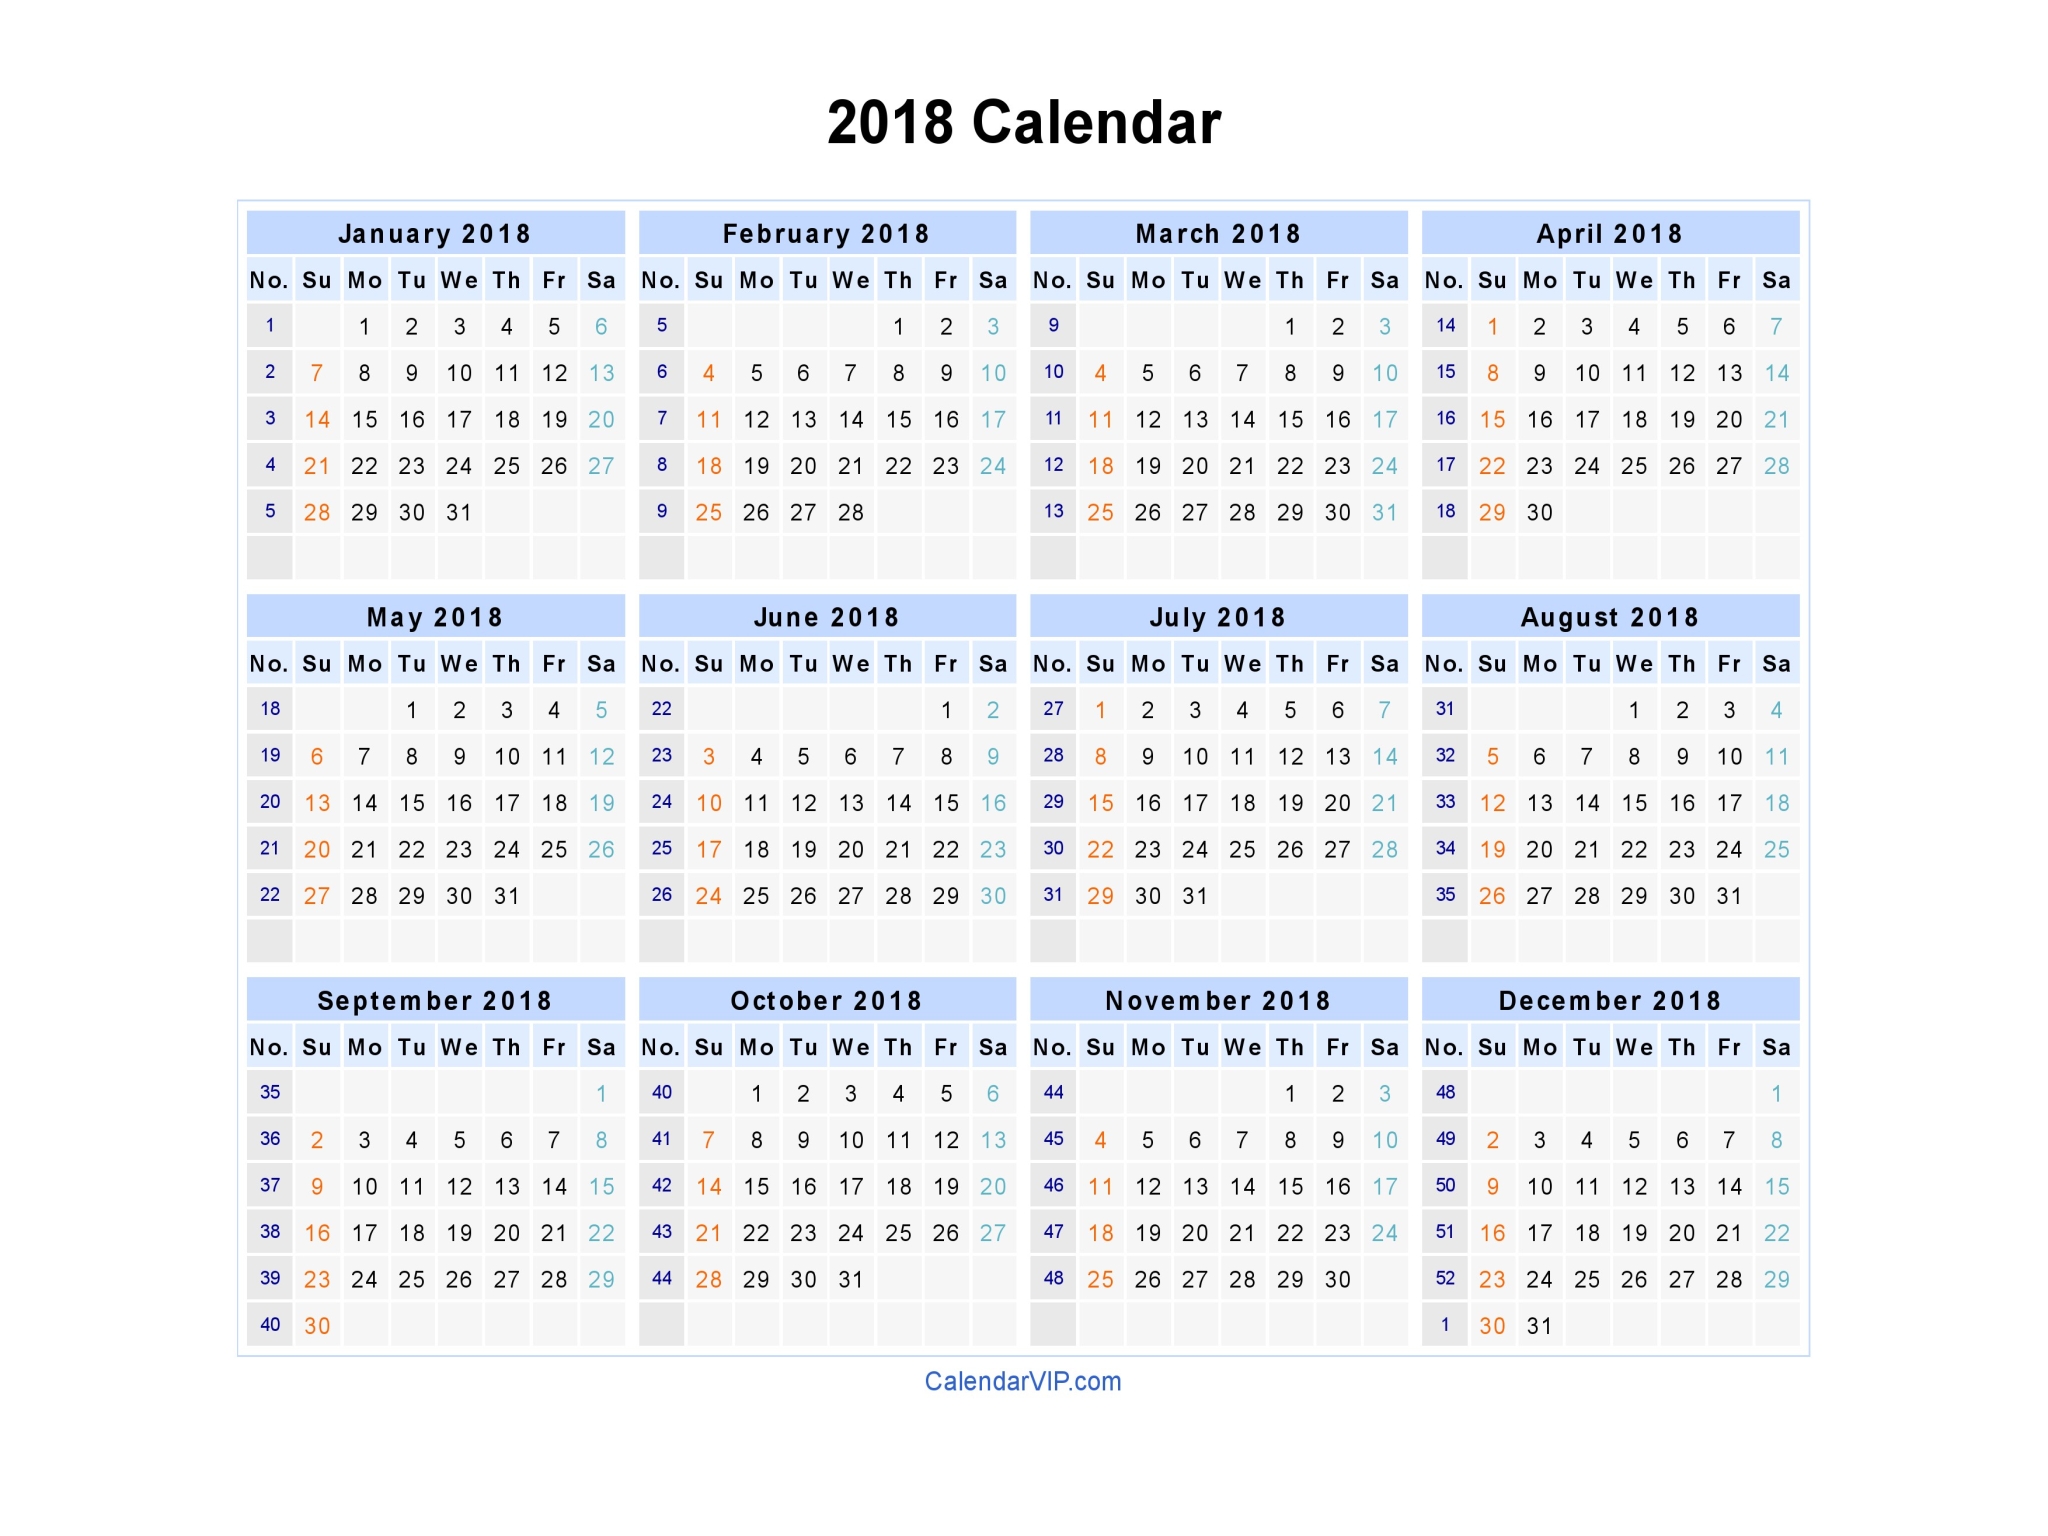 2018 Calendar - Blank Printable Calendar Template in PDF Word Excel
